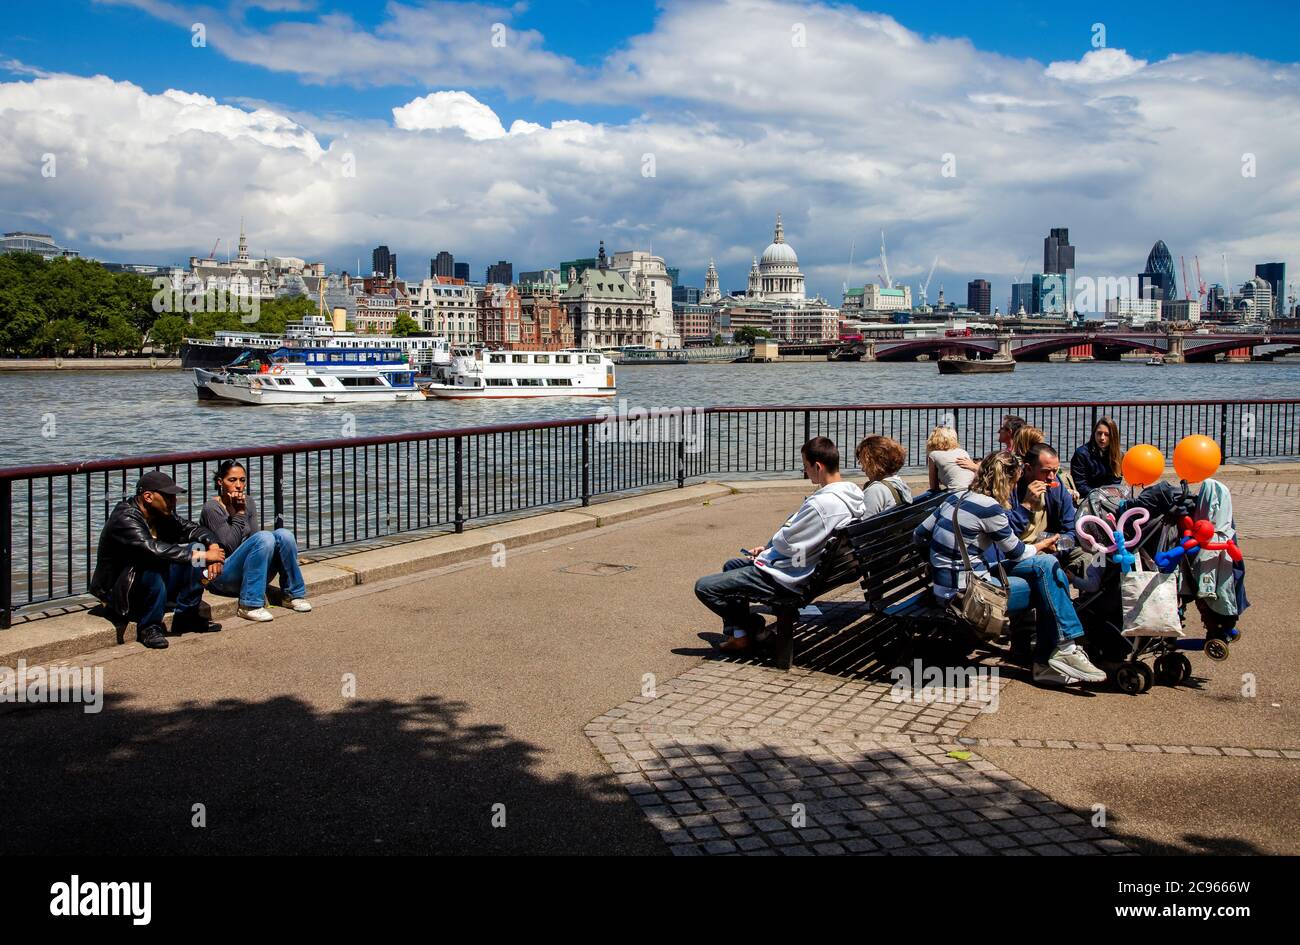 Londra, Gran Bretagna - panorama della città. I turisti si siedono al Tamigi su panchine che si affacciano sulla città. | Londra, Grossbritannien - Stadtpanorama. Touriste Foto Stock